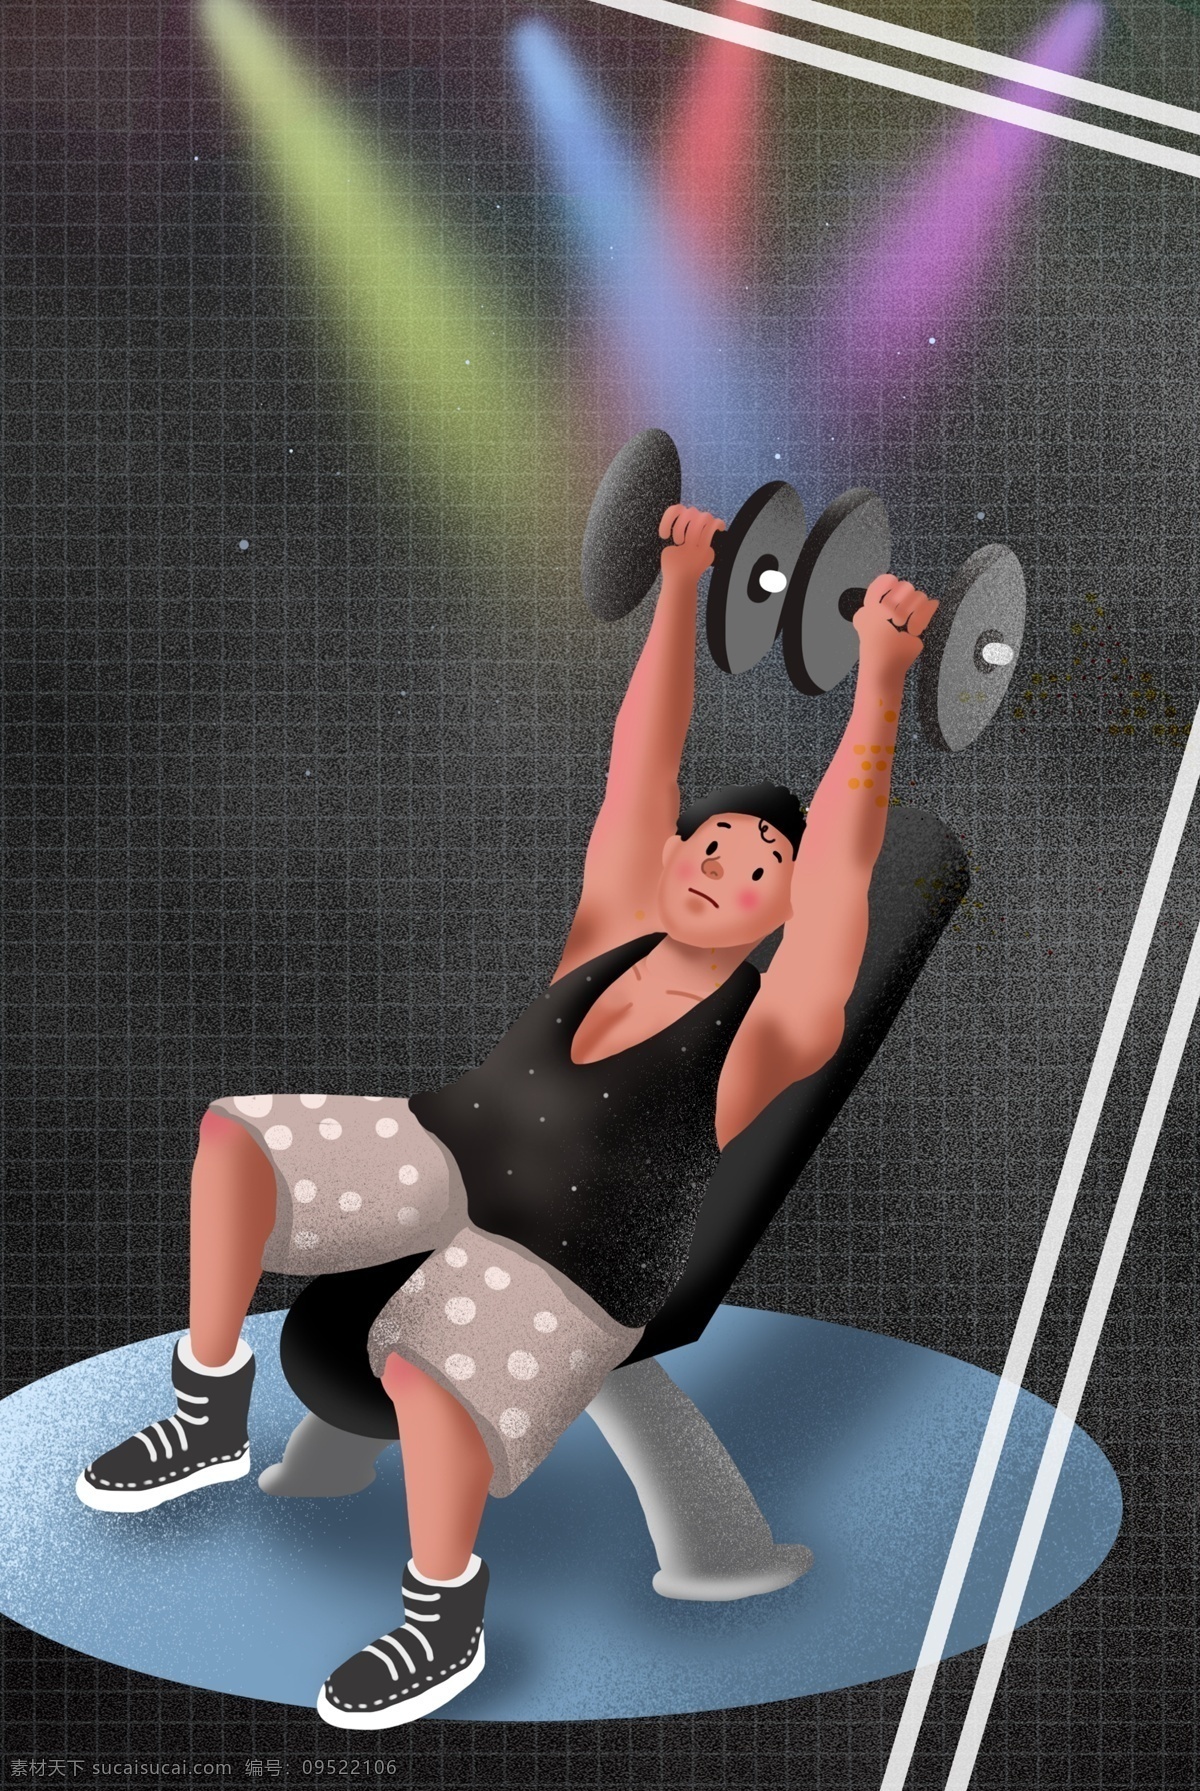 健身 型 动 体育运动 海报 全民健身 健身运动 健生俱乐部 完美身材 瘦身 减肥 美体